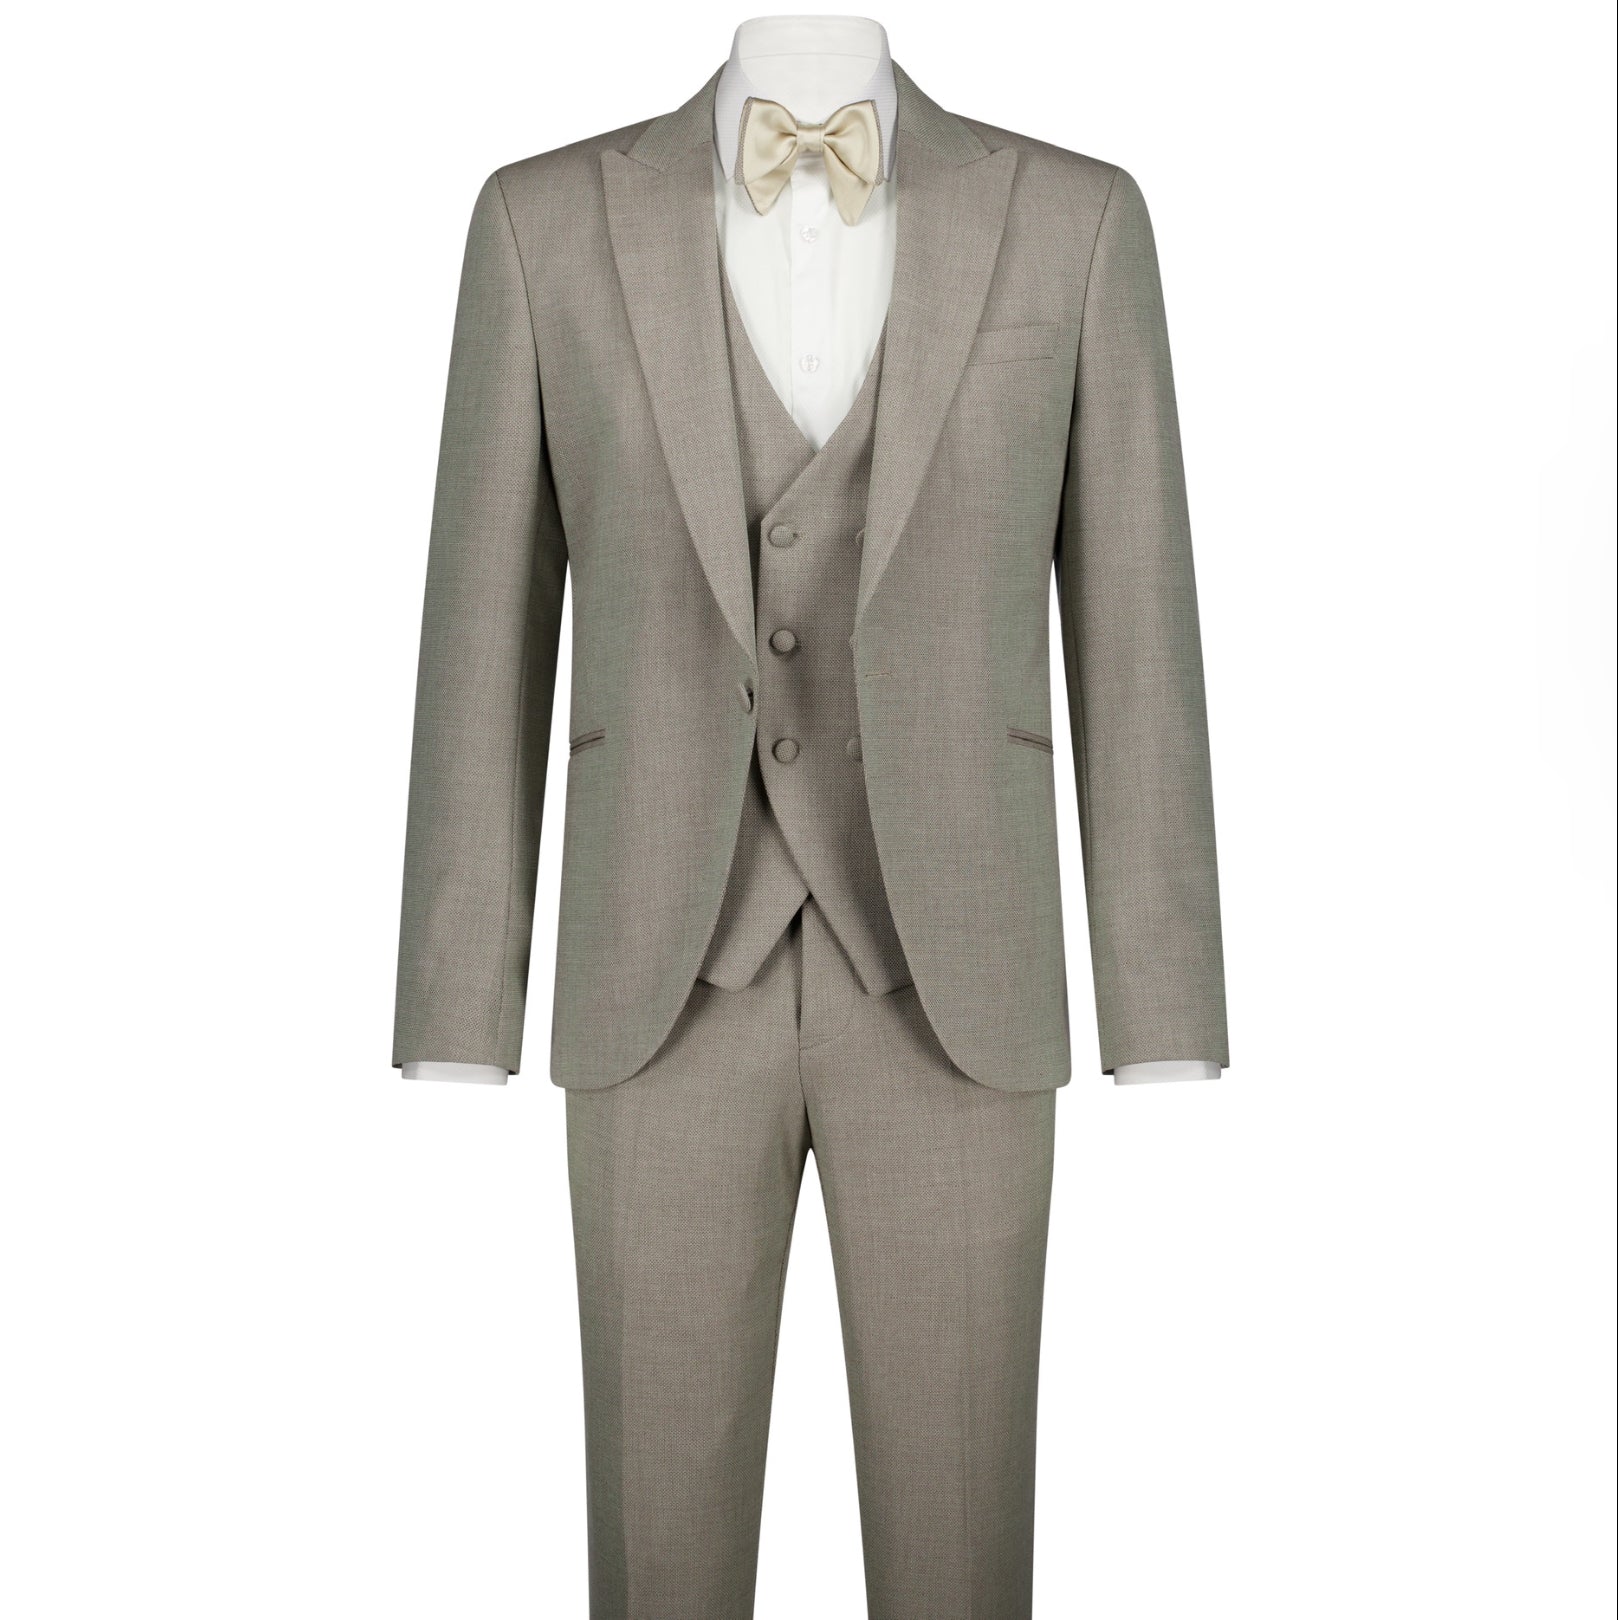 The Veratti Suit